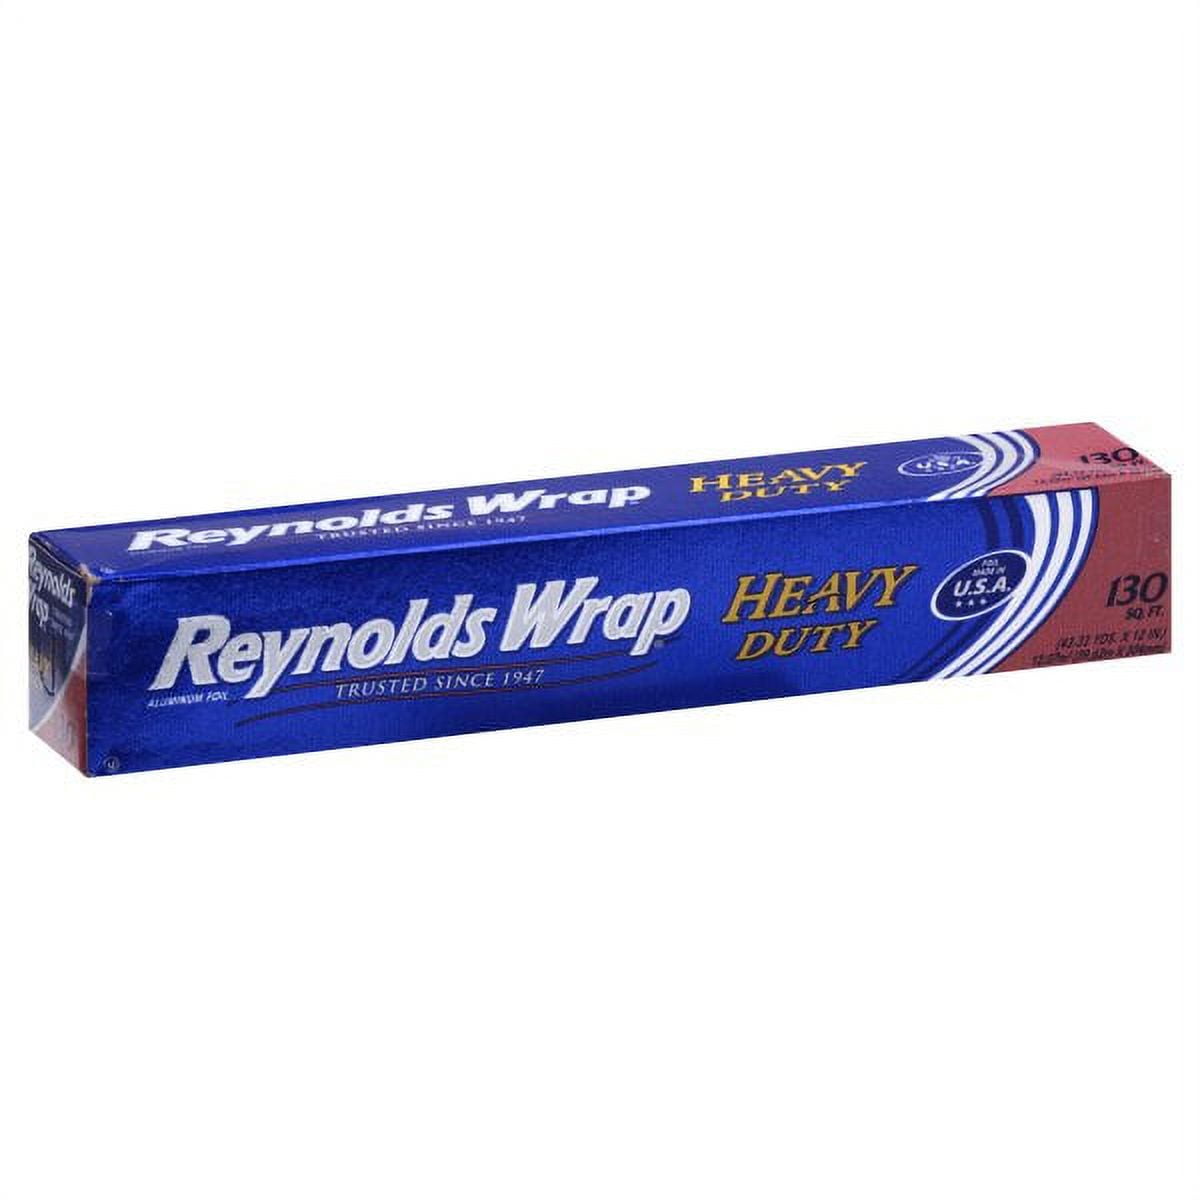 Reynolds Wrap 130 Sq. Ft. Non Stick Foil